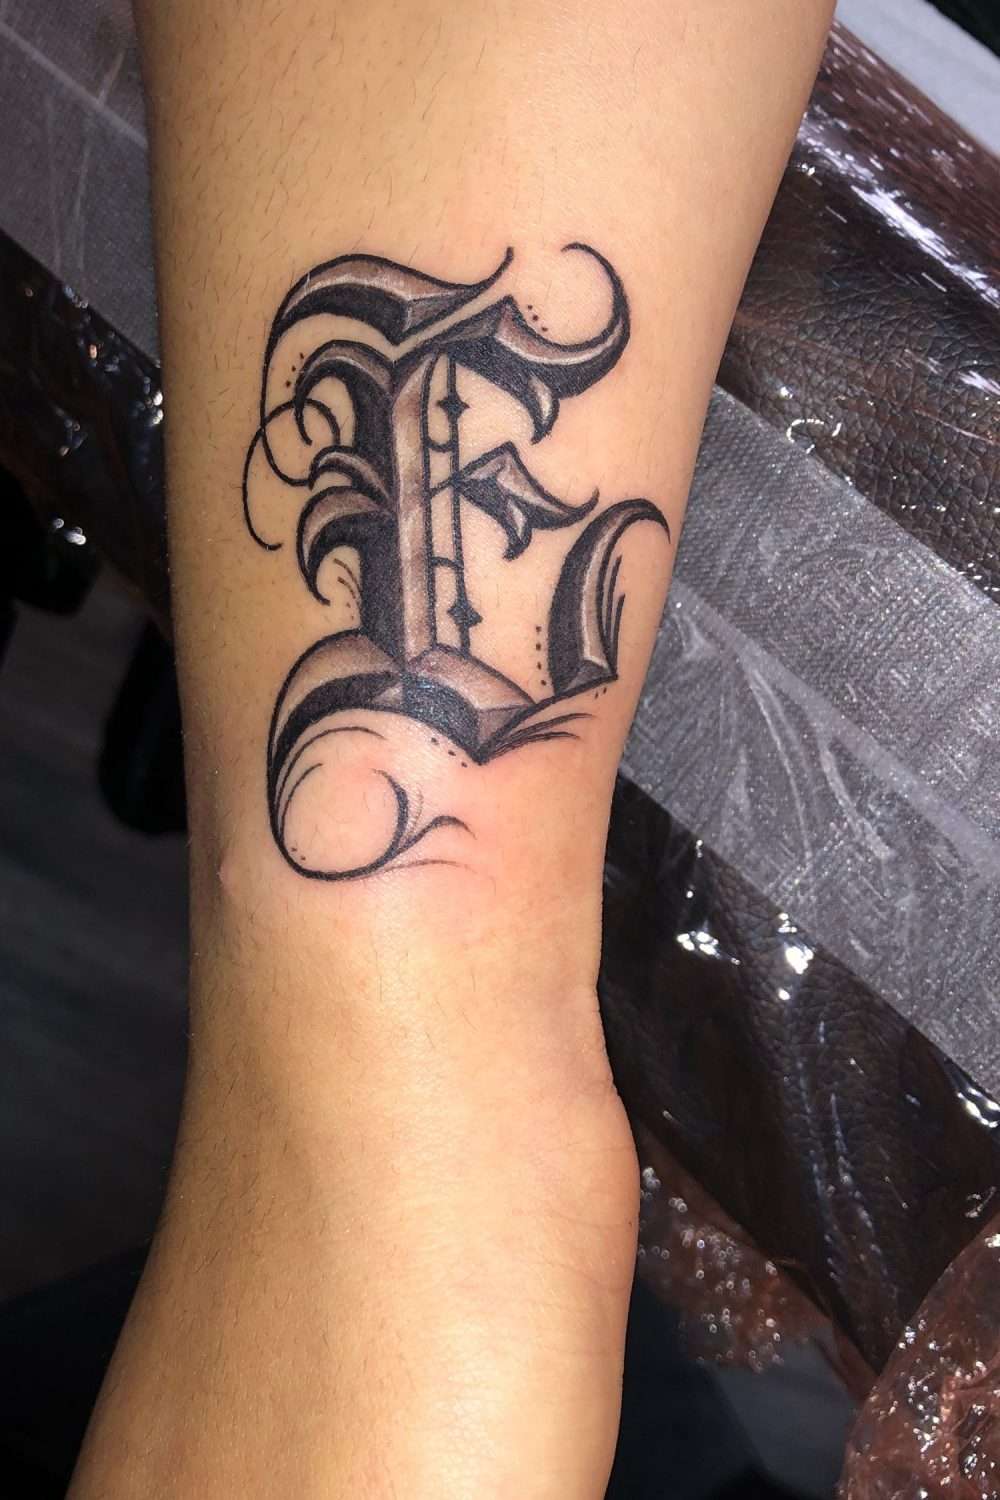 Tatuaje de letra "E"